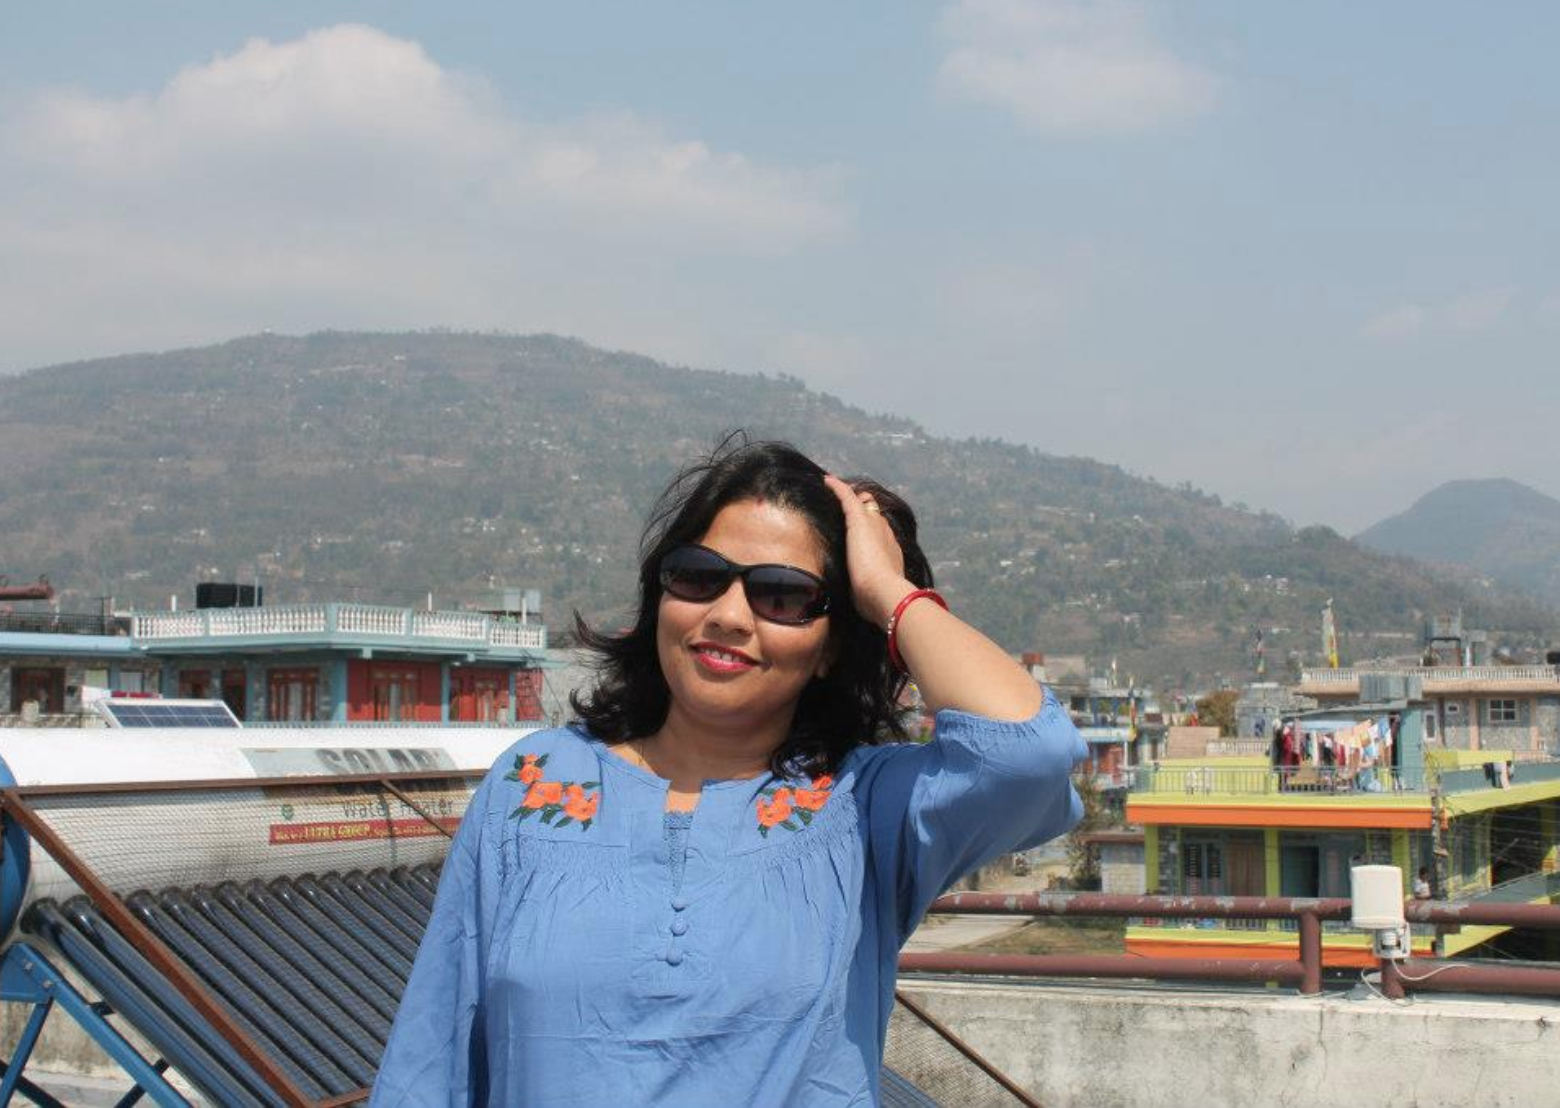 Paru at the RHTC, Pokhara.